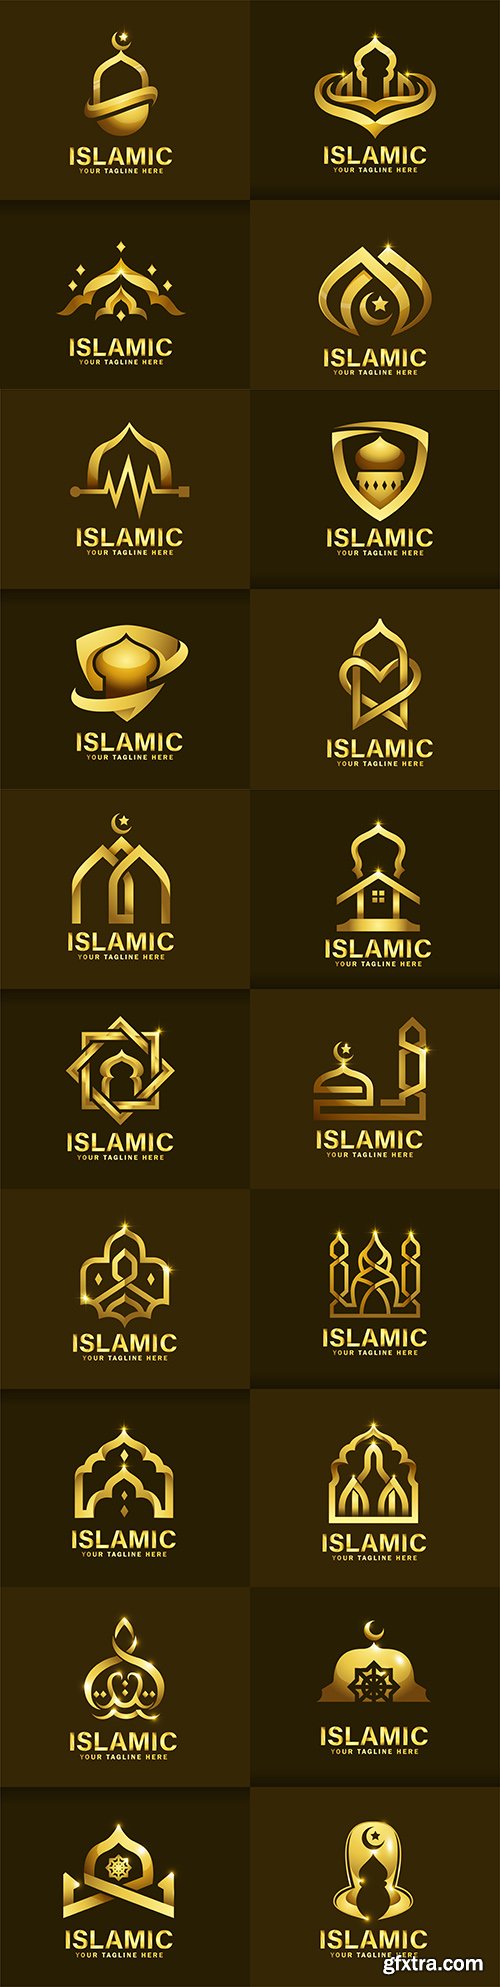 Luxurious Islamic logo template design golden mosque